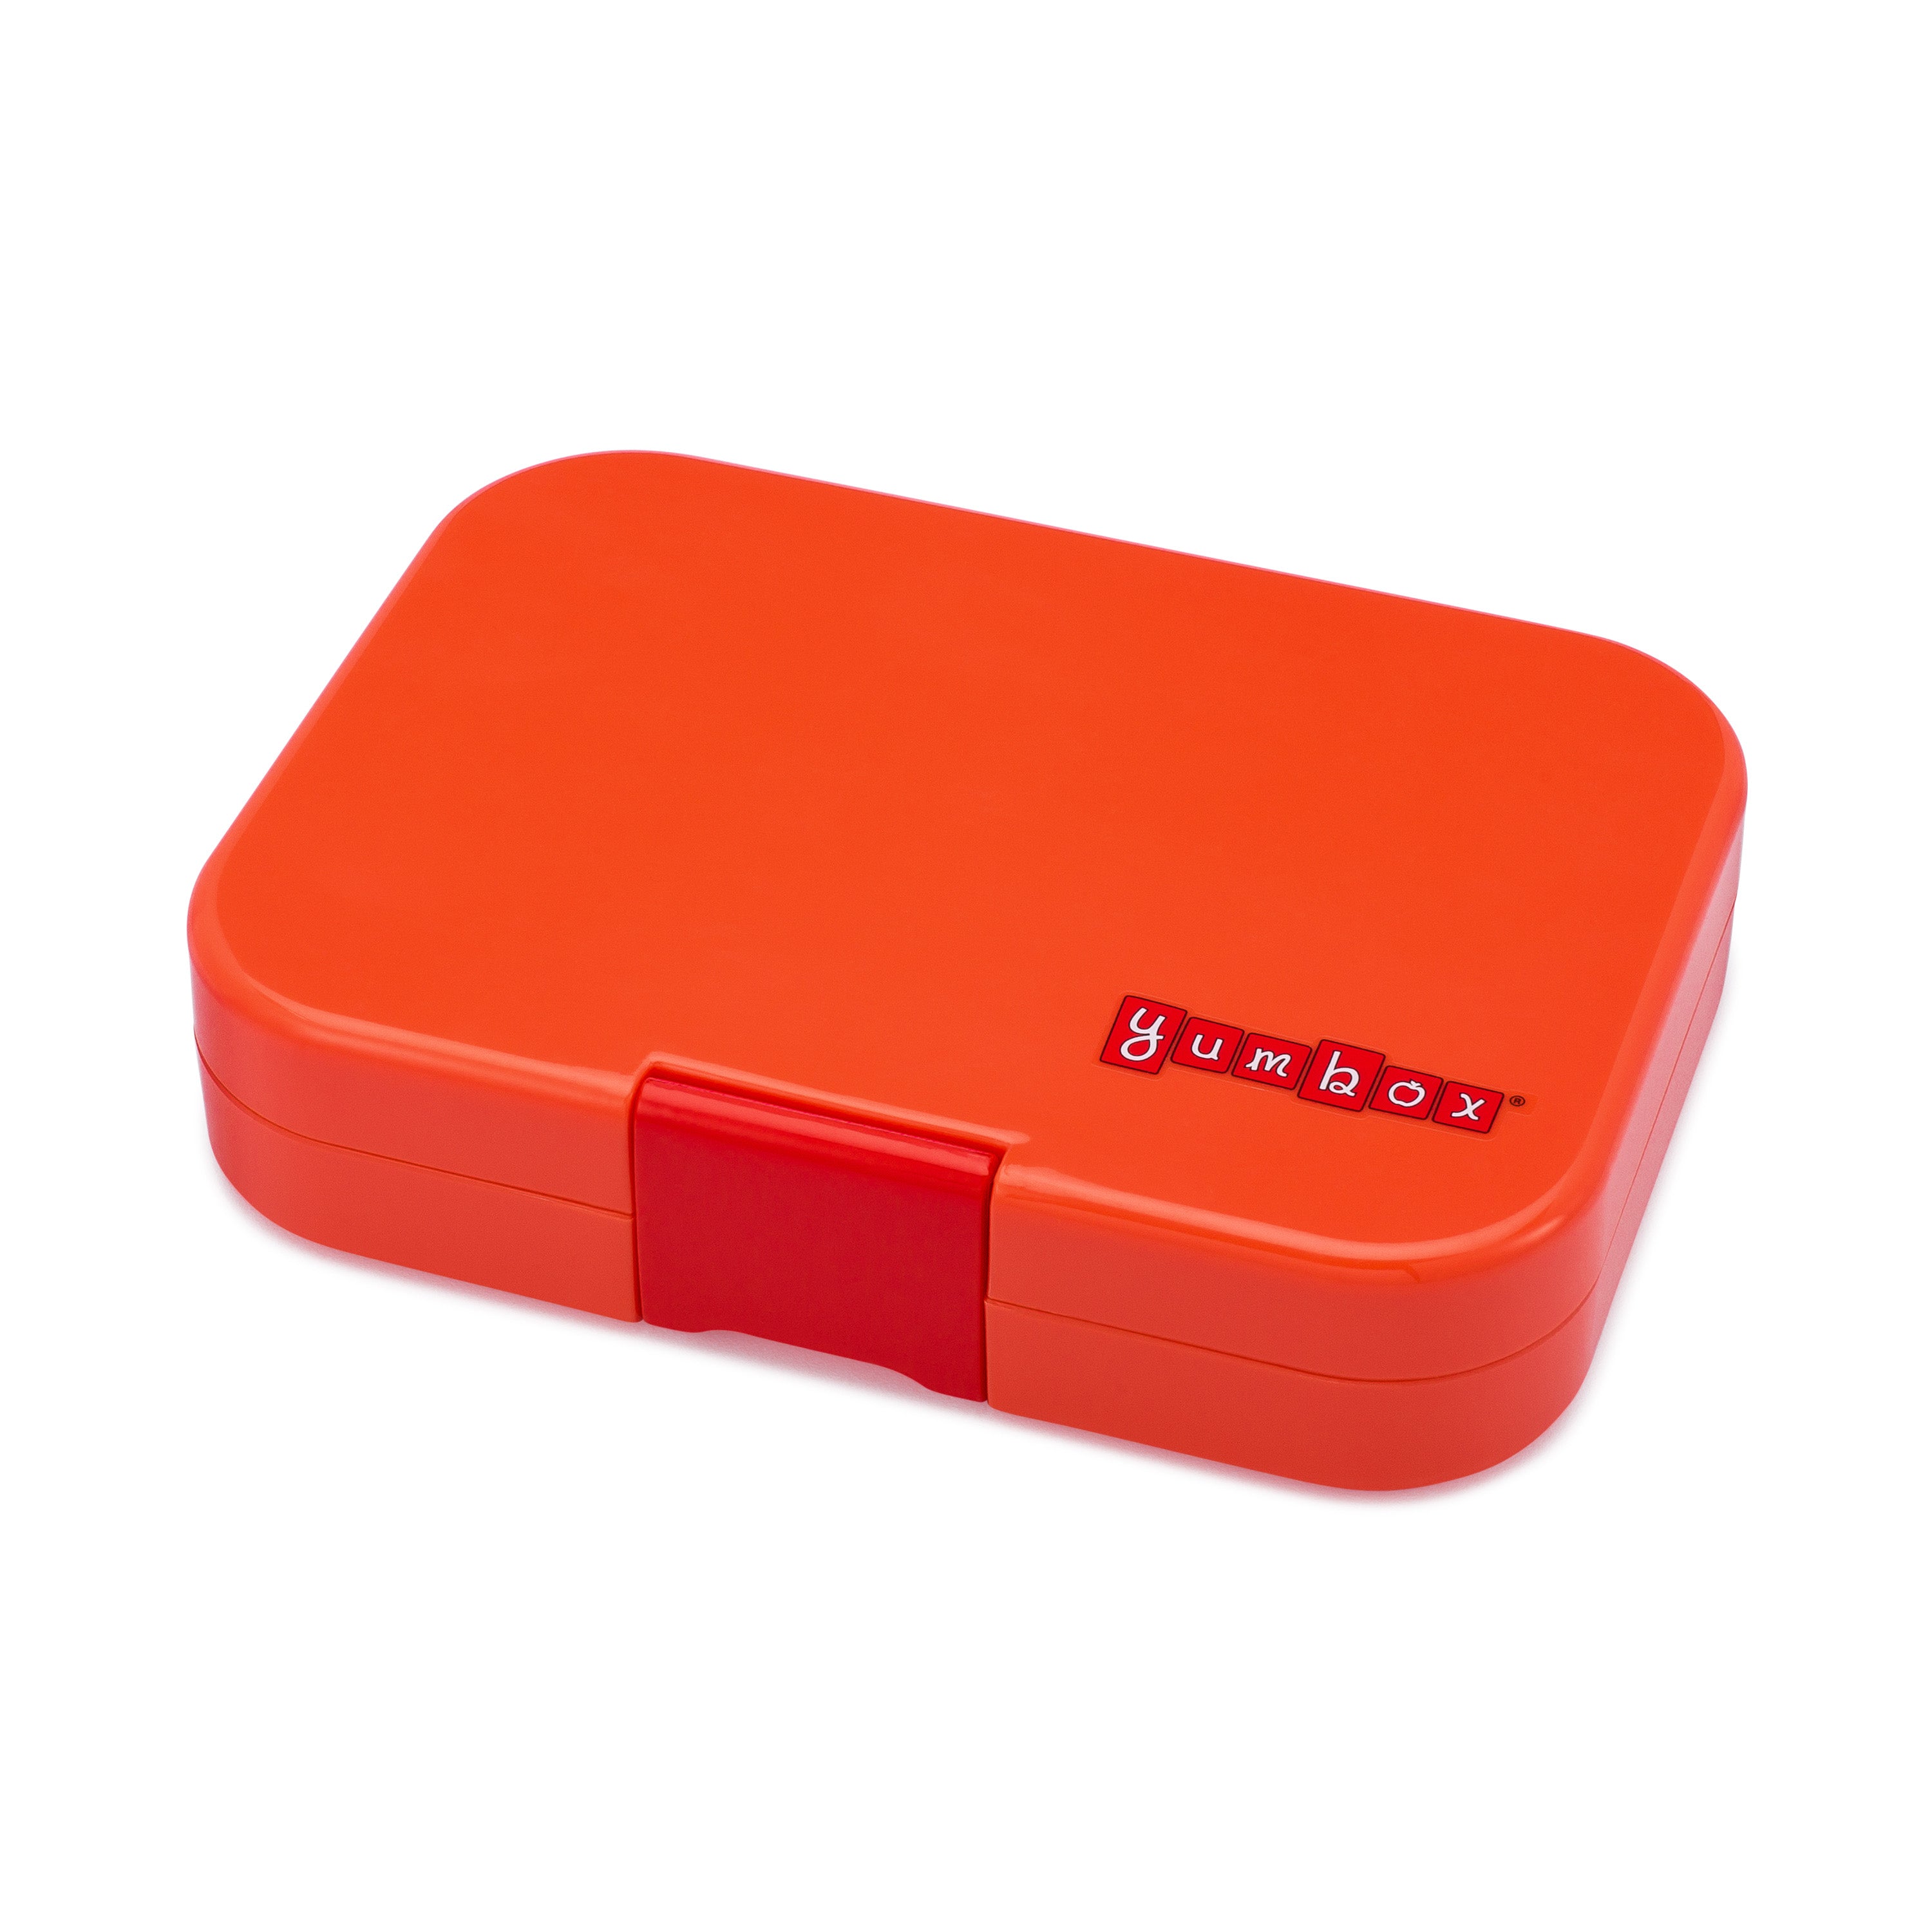 yumbox-panino-saffron-orange-4-compartment-lunch-box- (1)